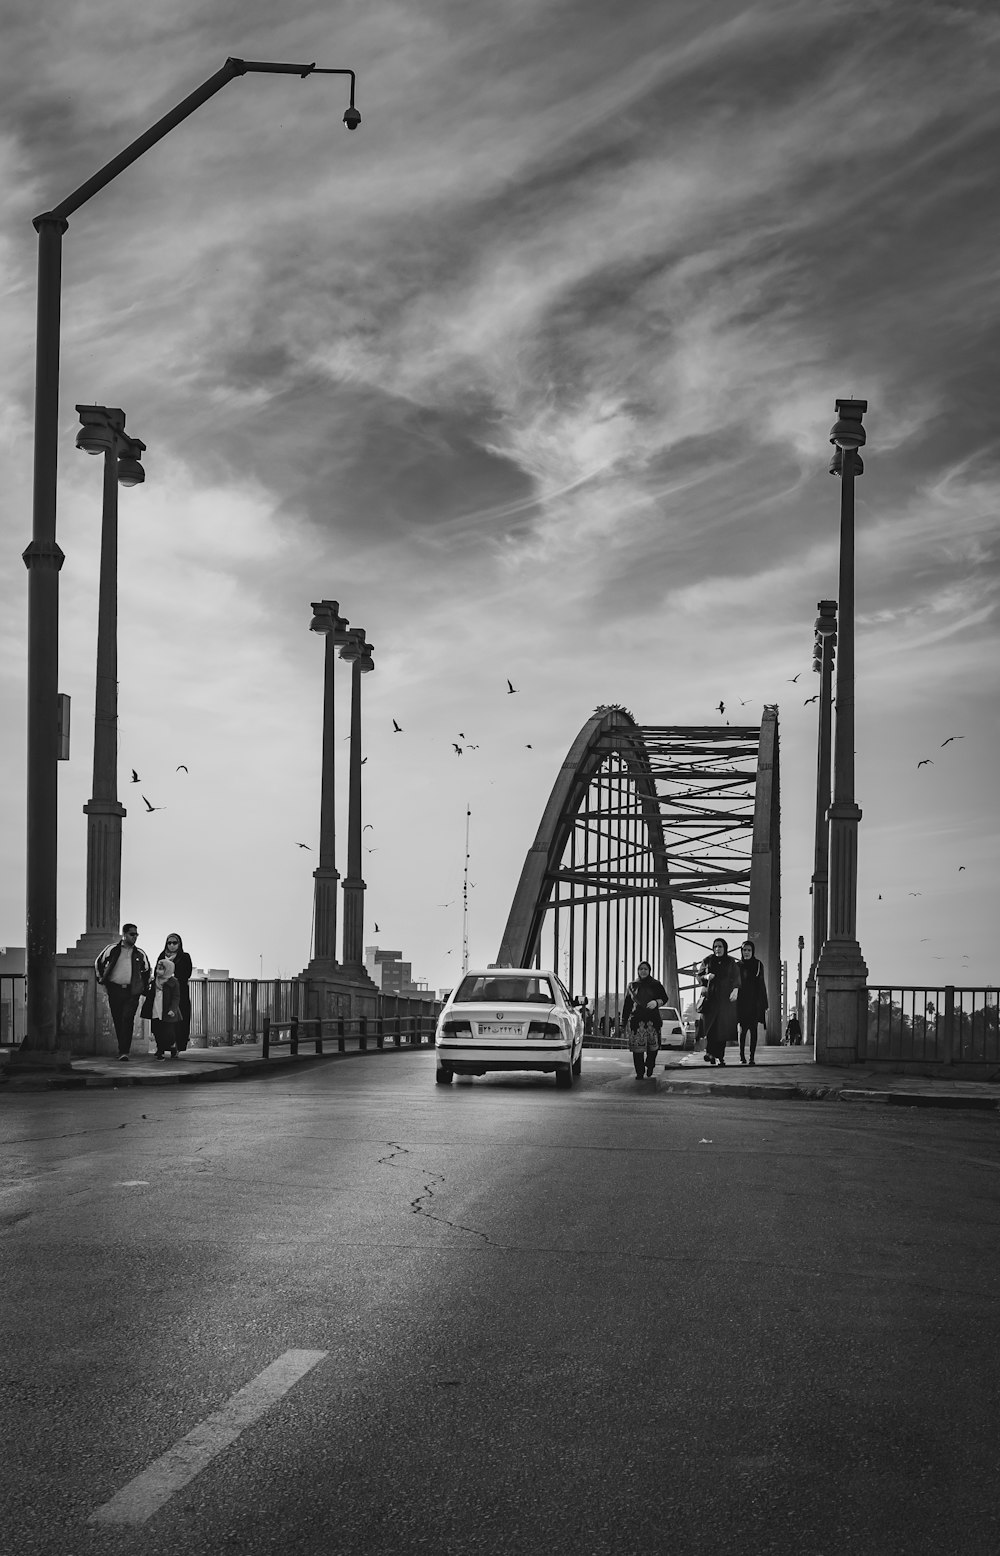 車両と人が歩く橋のグレースケール写真